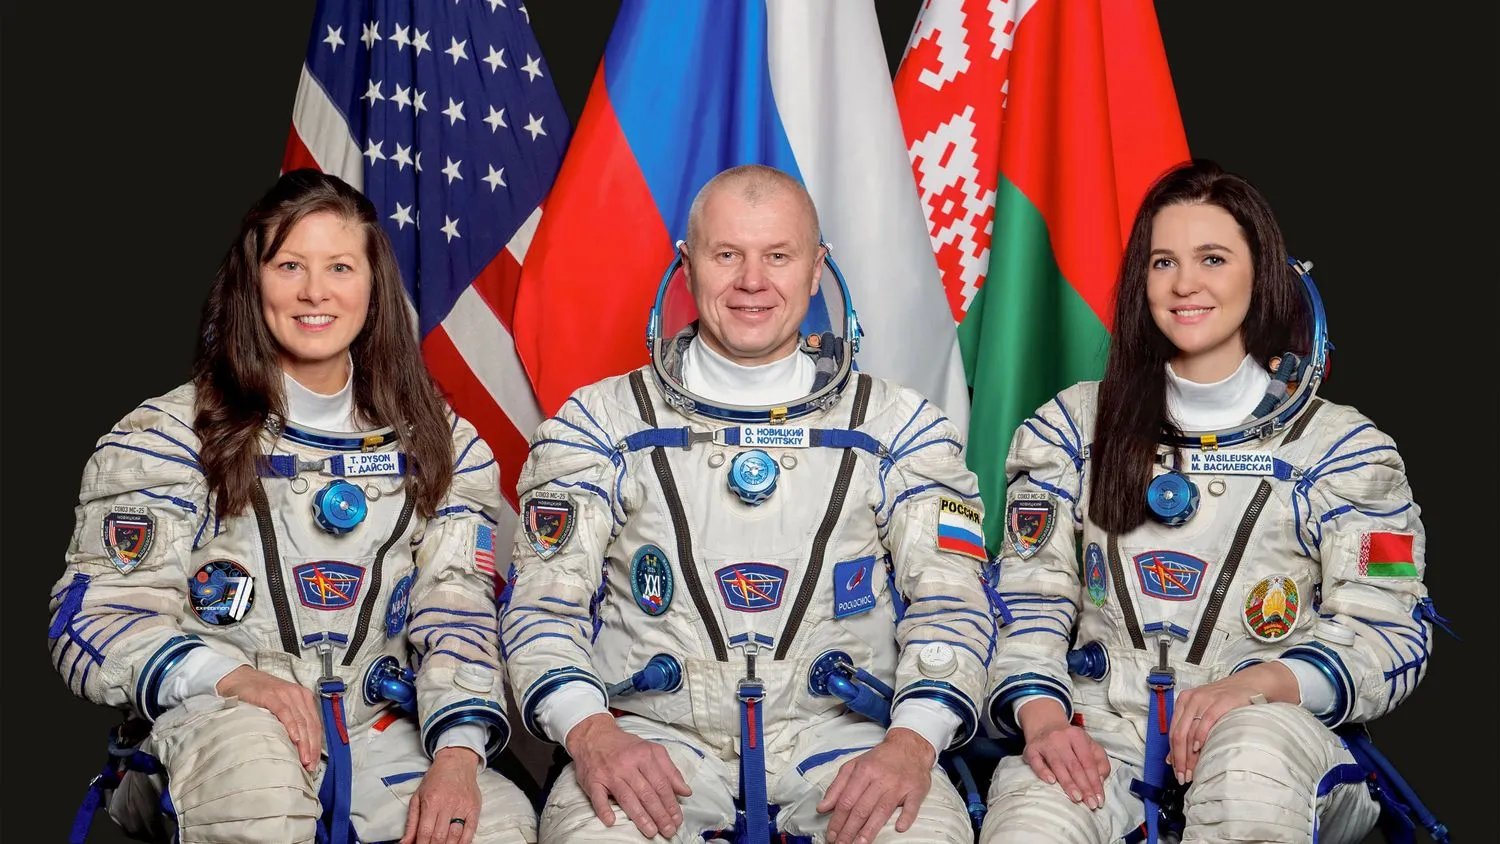 drei lächelnde Astronauten (zwei Frauen und ein Mann) in weißen Raumanzügen sitzen vor ihren Nationalflaggen vor einem dunklen Hintergrund